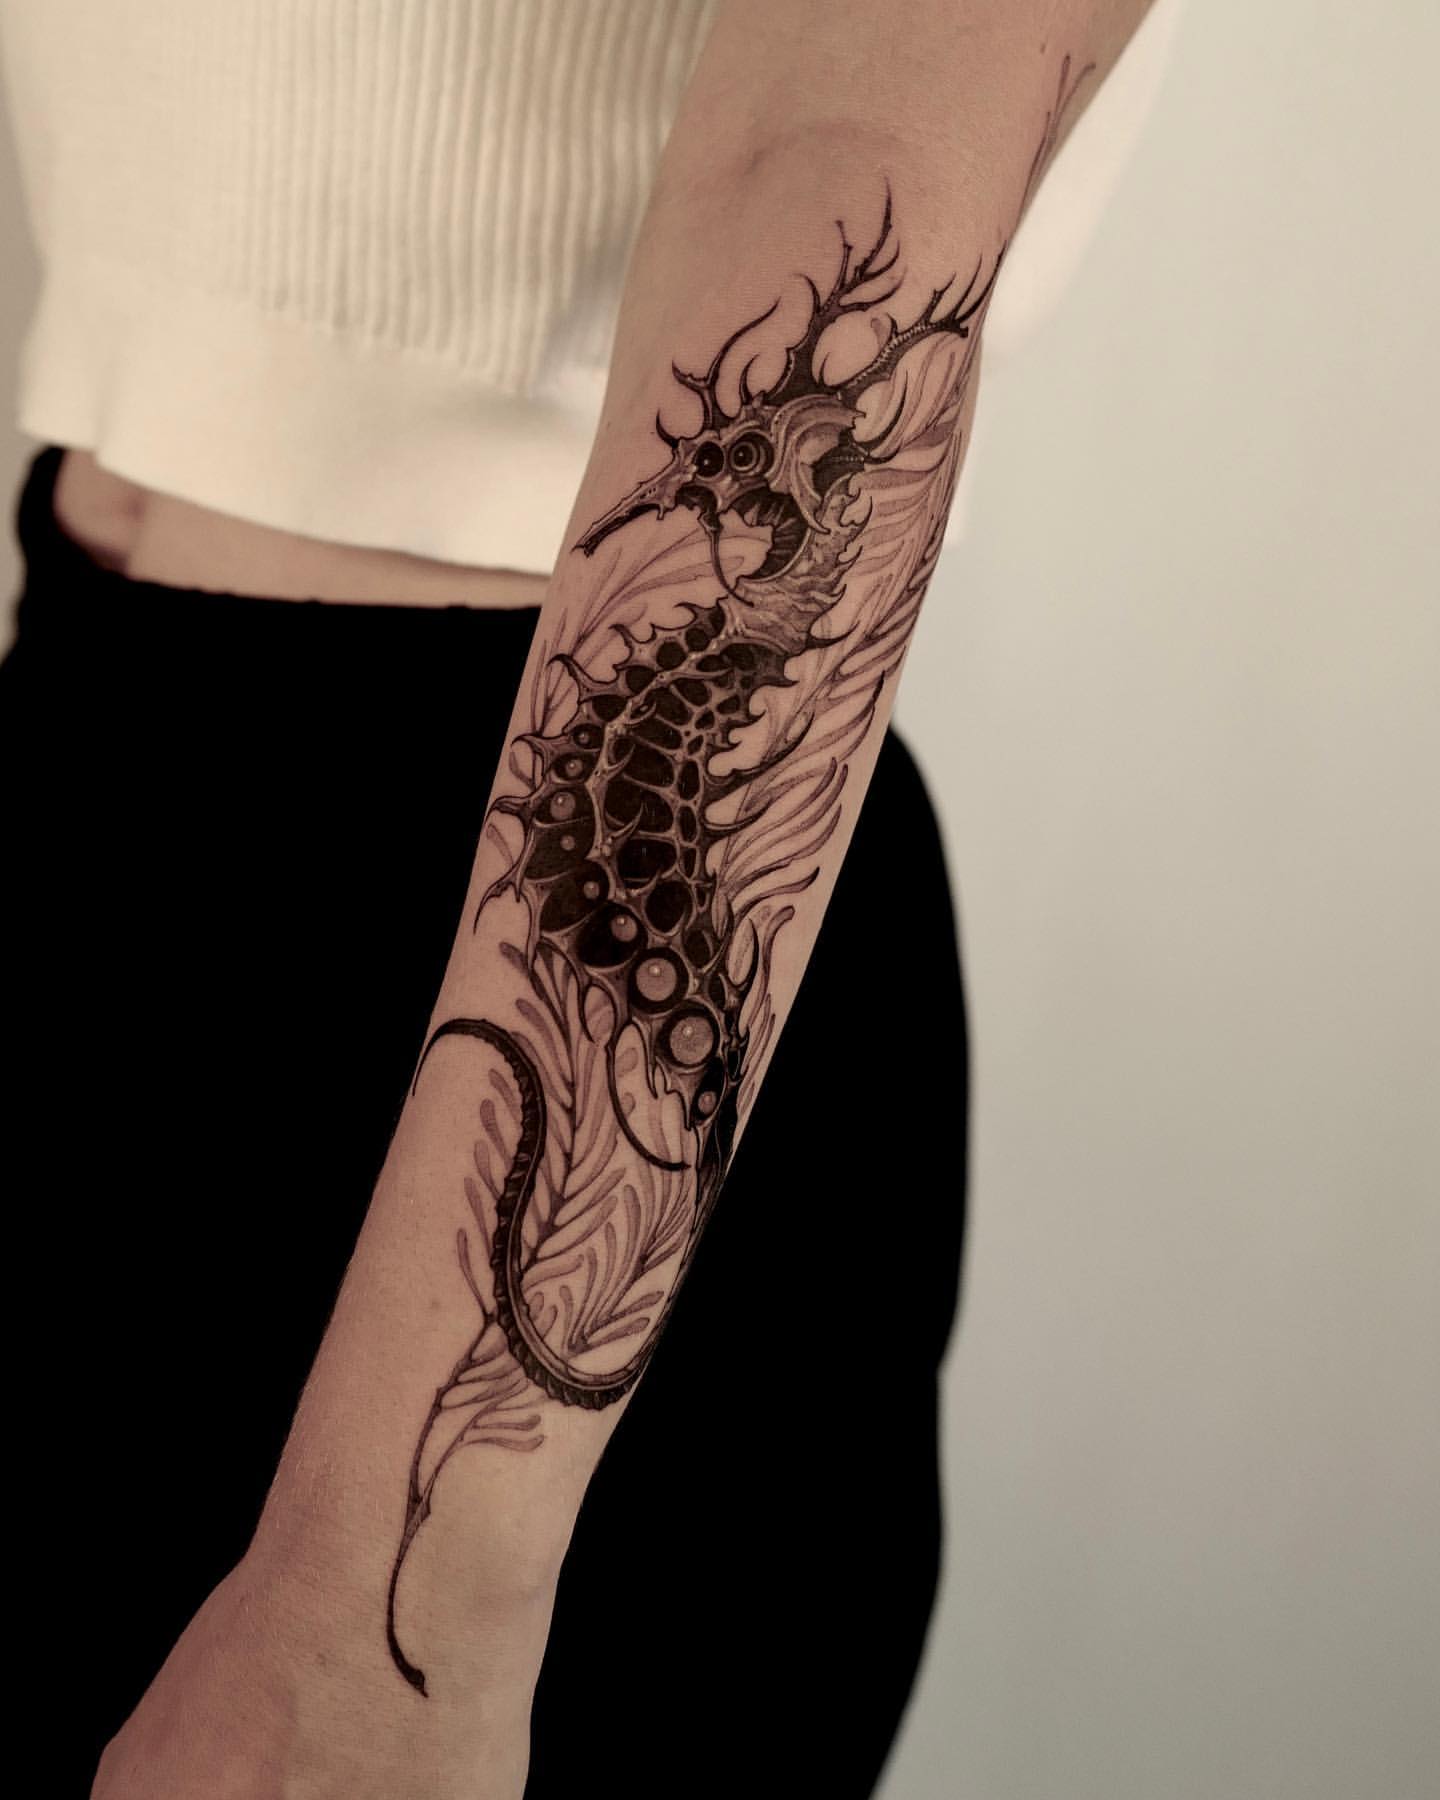 Seahorse Tattoo Ideas 23